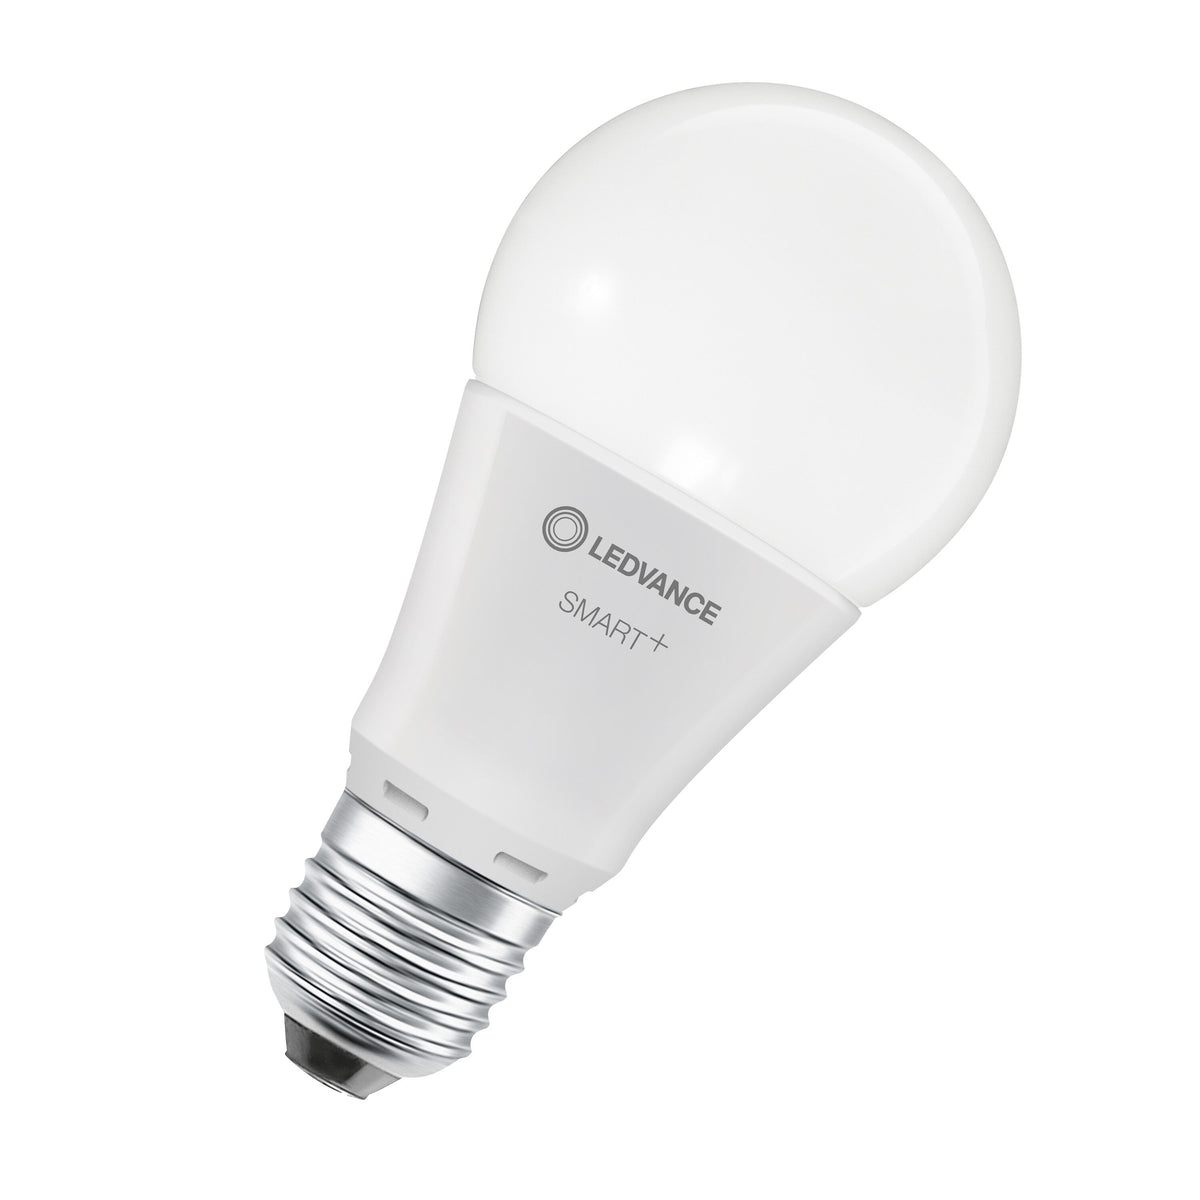 Lampada LED LEDVANCE Wifi SMART+, satinata, 9W, 806lm, confezione da 3